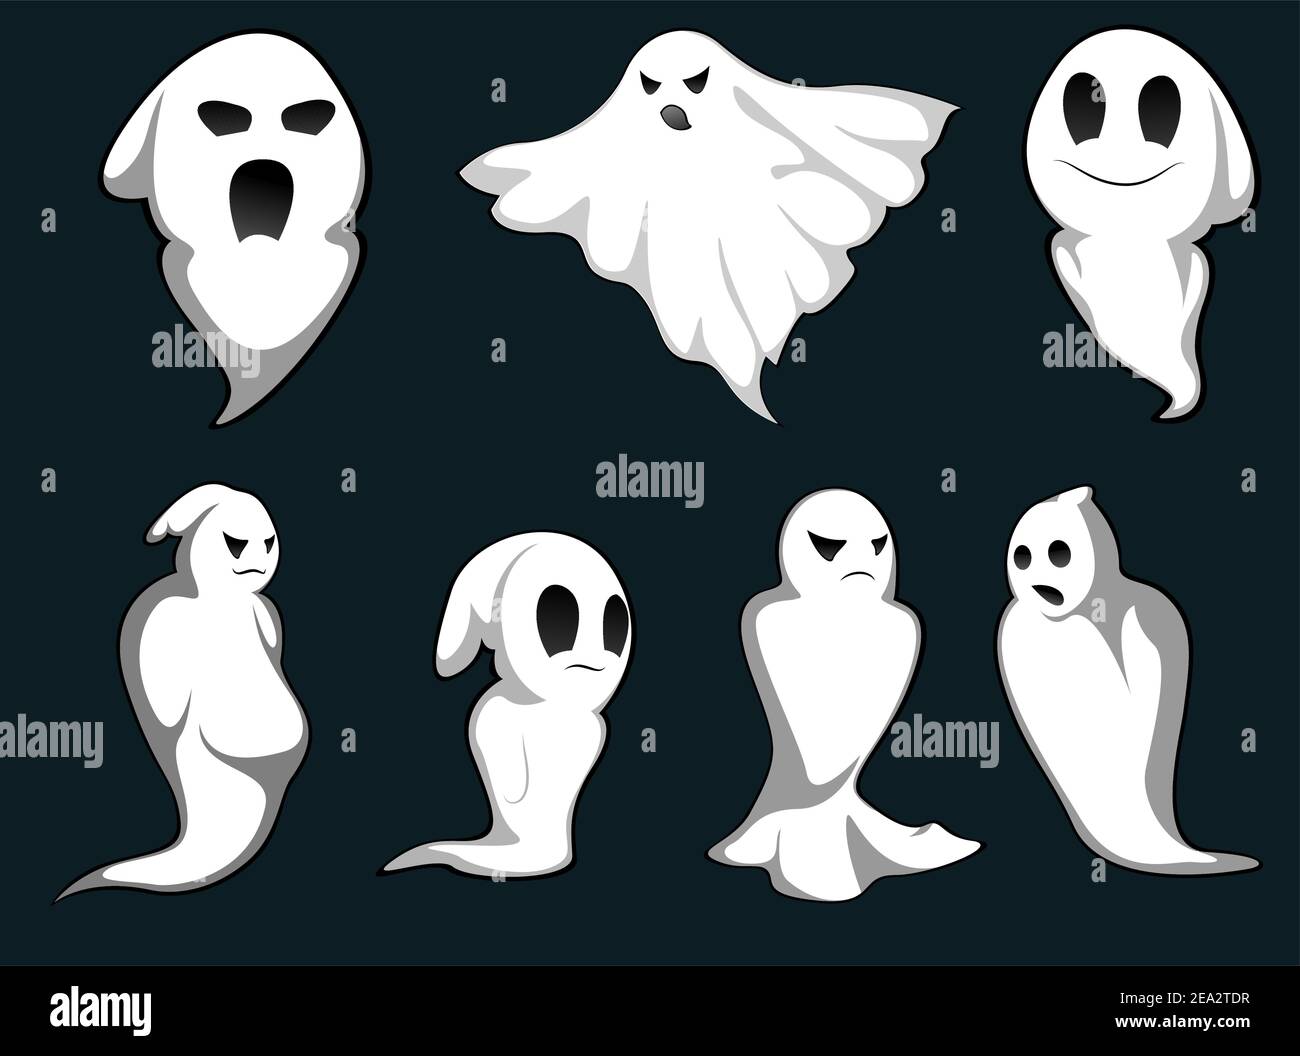 Série de fantômes pour concevoir isolé sur fond Illustration de Vecteur